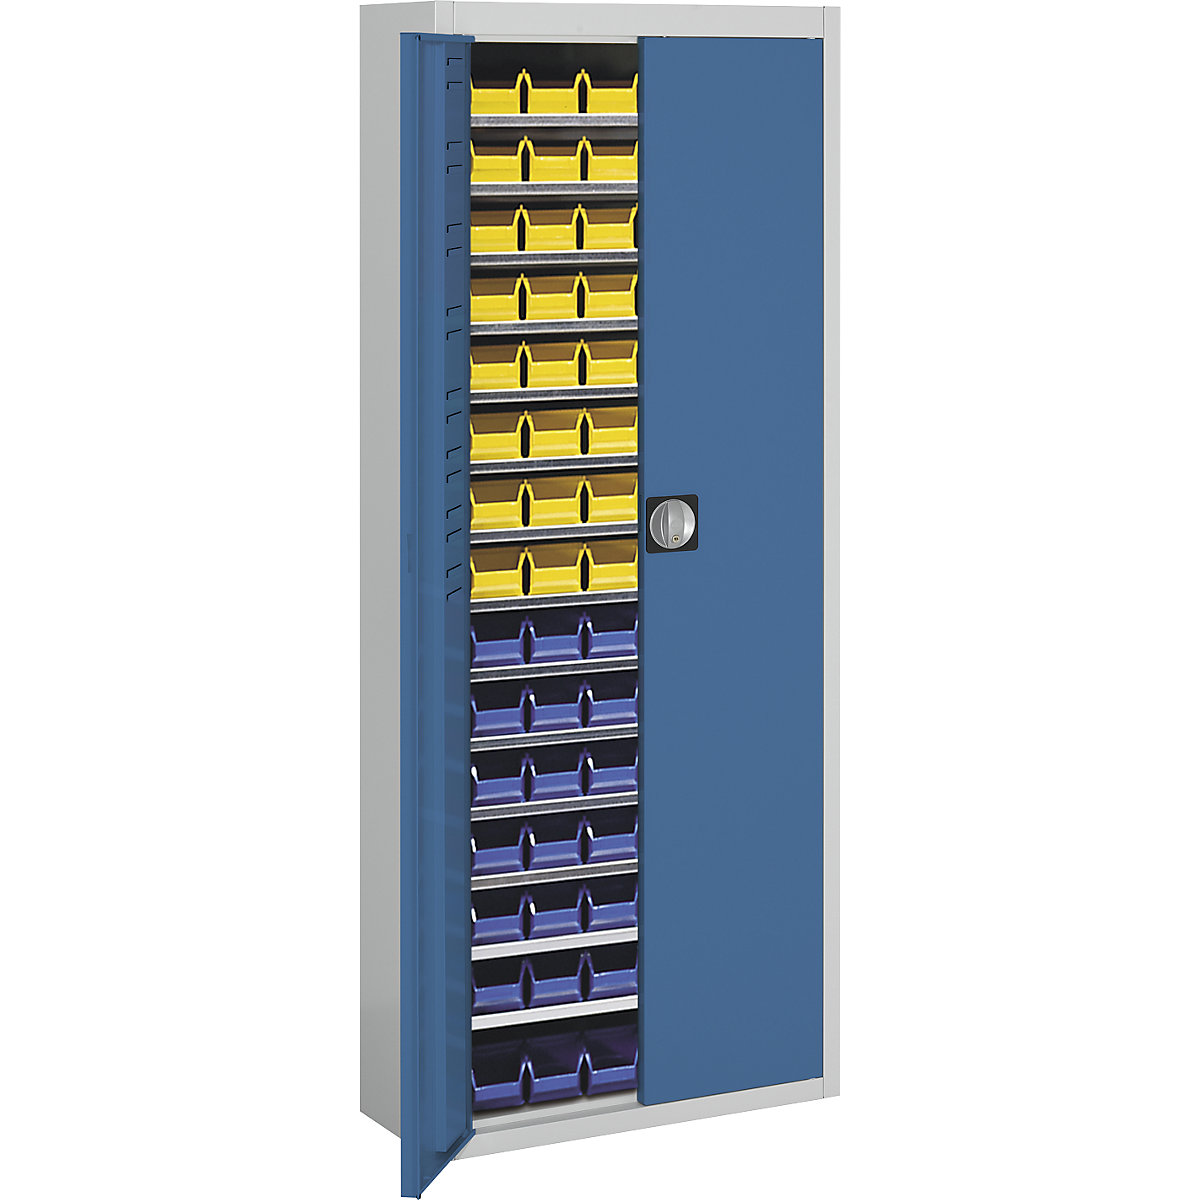 Magazijnkast met magazijnbakken – mauser, h x b x d = 1740 x 680 x 280 mm, tweekleurig, kastframe grijs, deuren blauw, 90 bakken-2